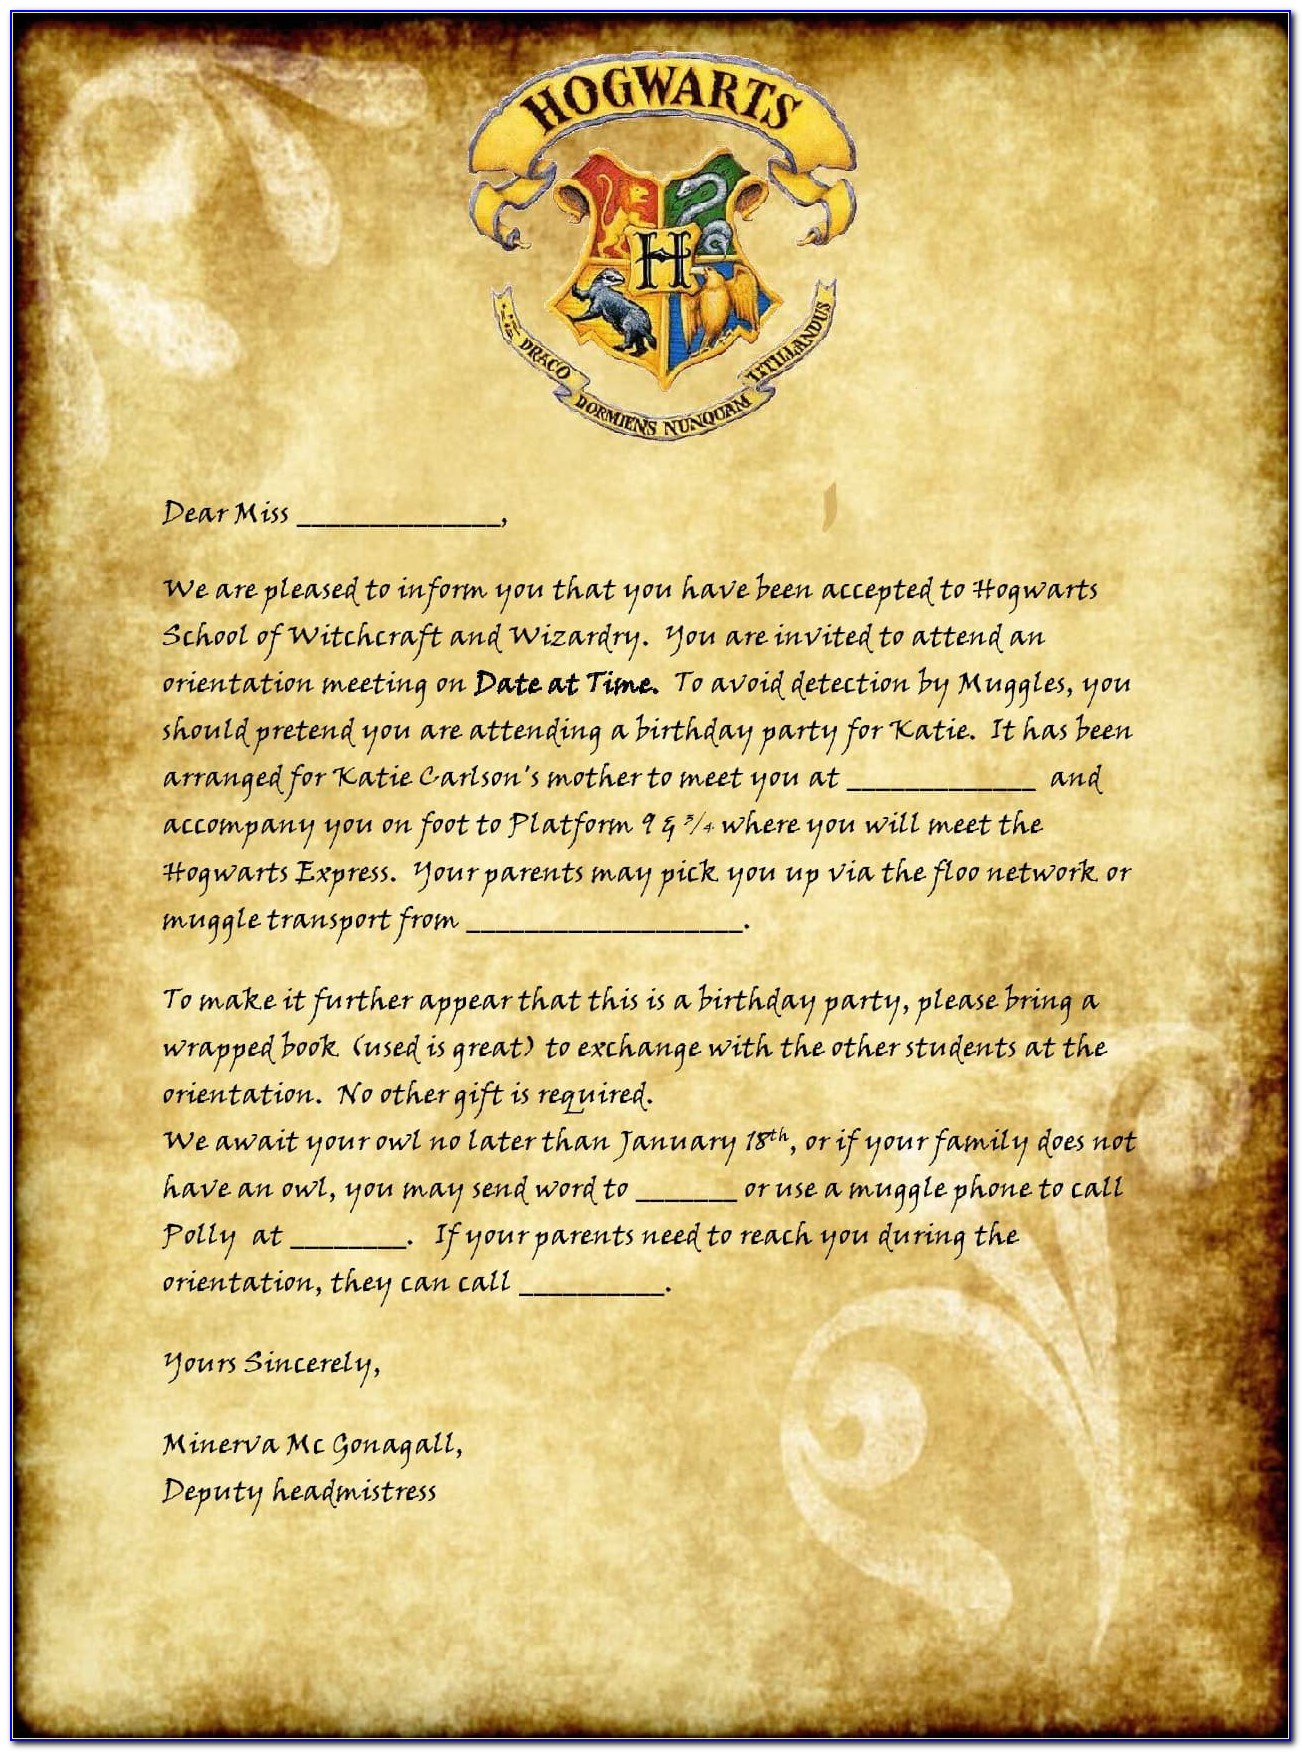 Hogwarts Acceptance Letter Template Google Docs